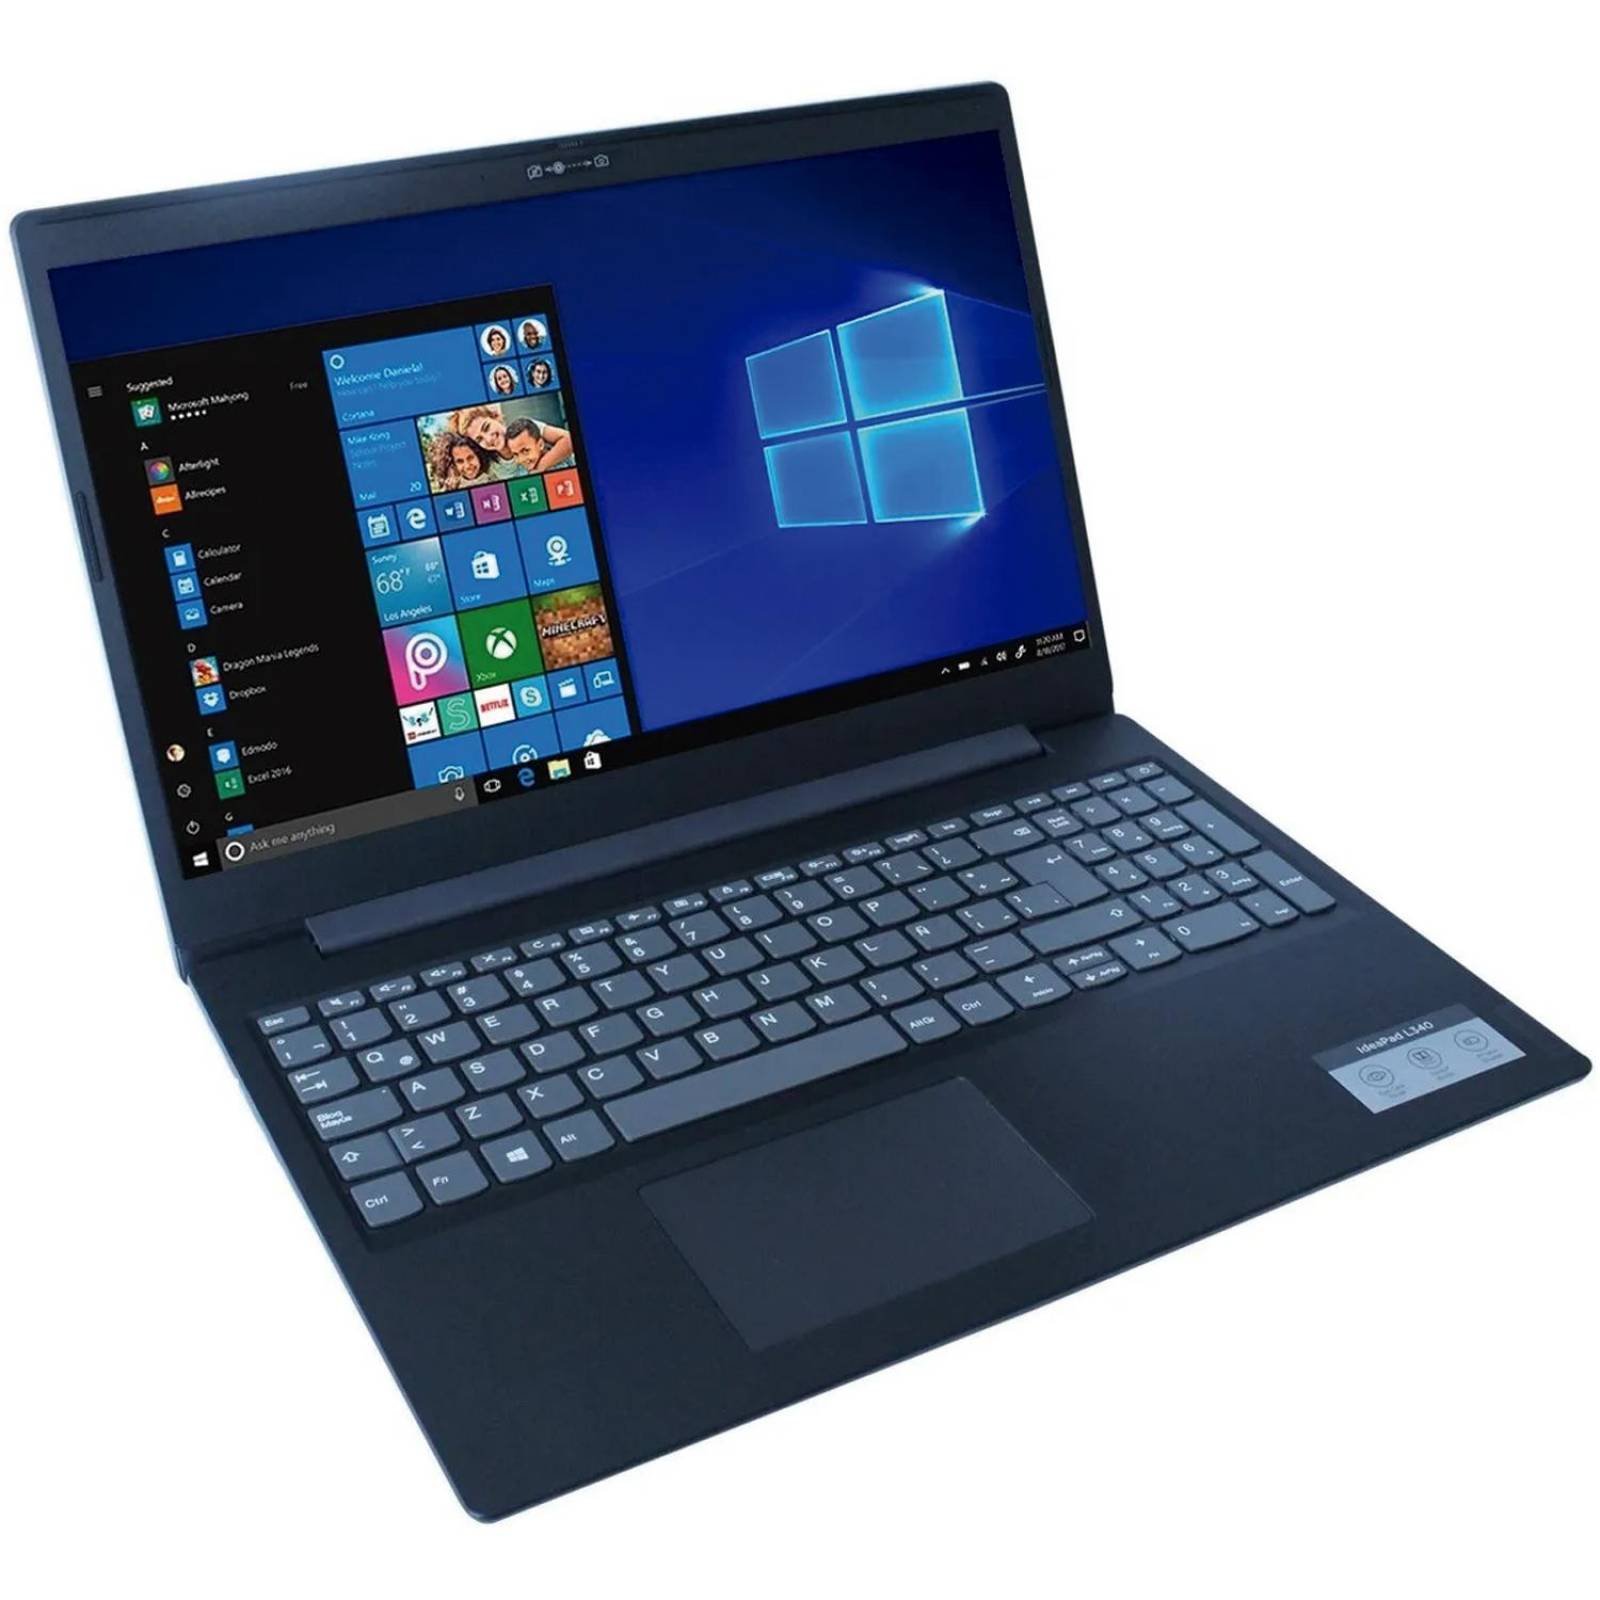 Laptop Ryzen 5 3500U Vega 8 - Viral Update